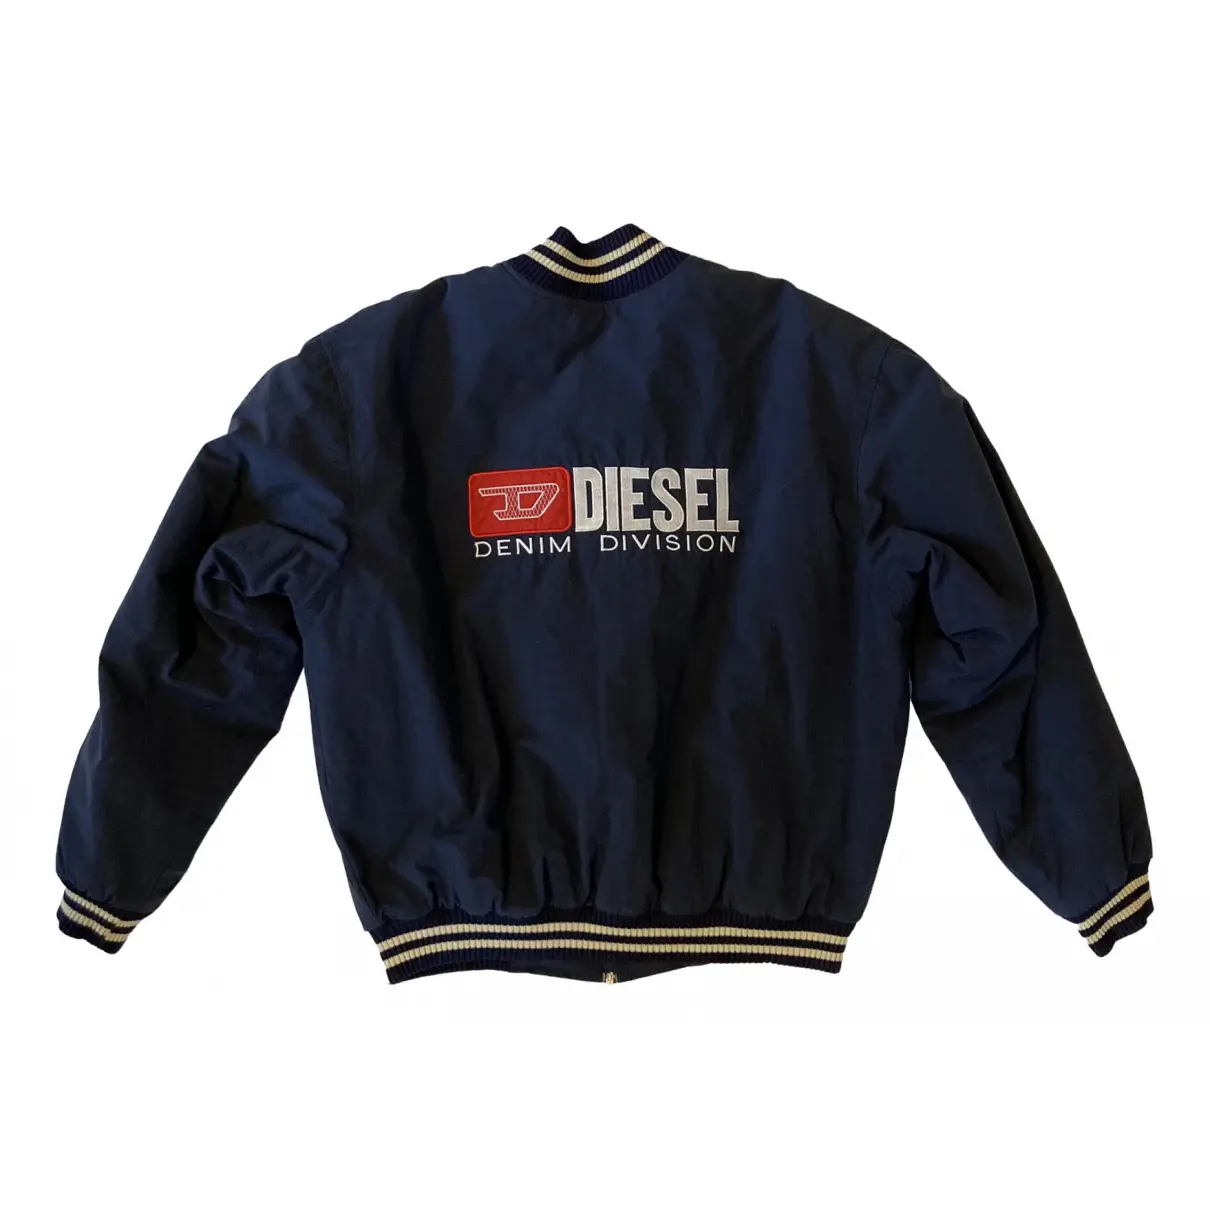 Buy Diesel Jacket online